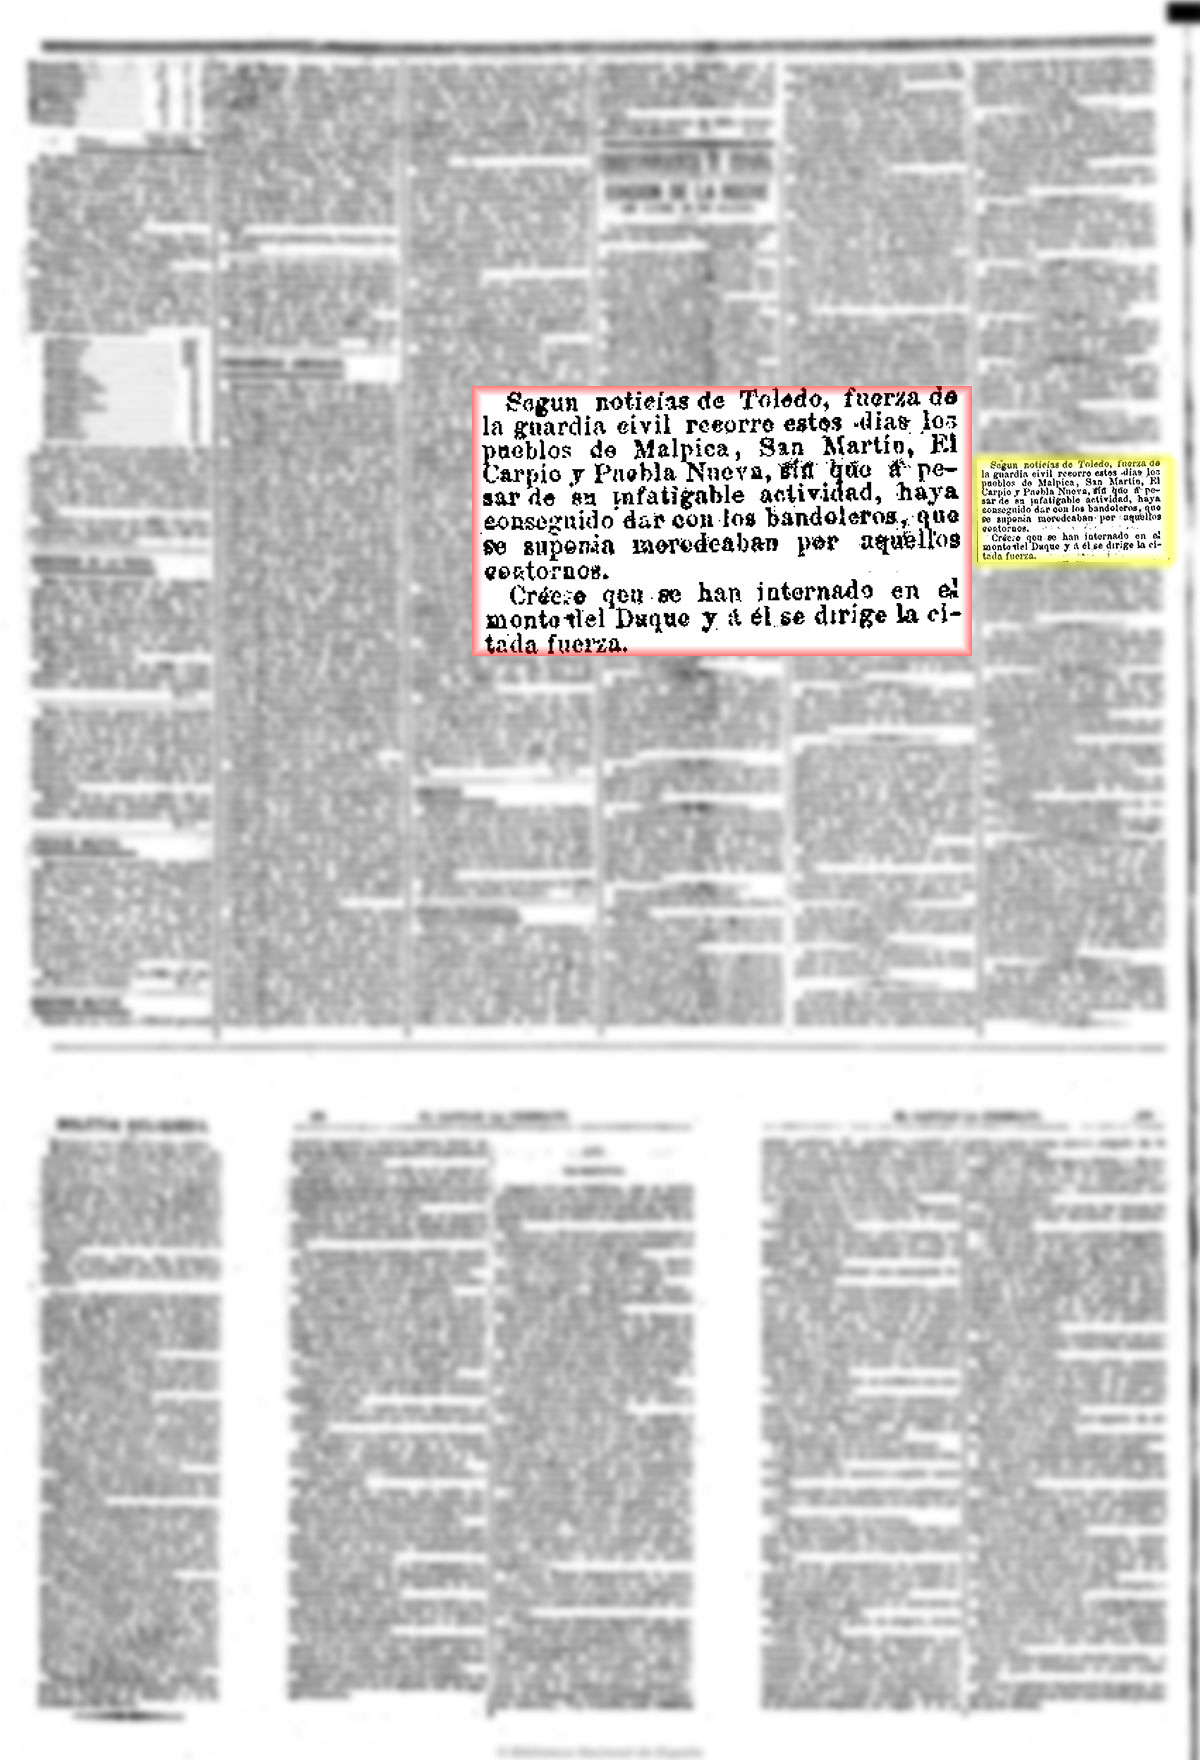 La Correspondencia de España 11/3/1880, n.º 8.023, página 2. Persiguiendo bandoleros en Pusa